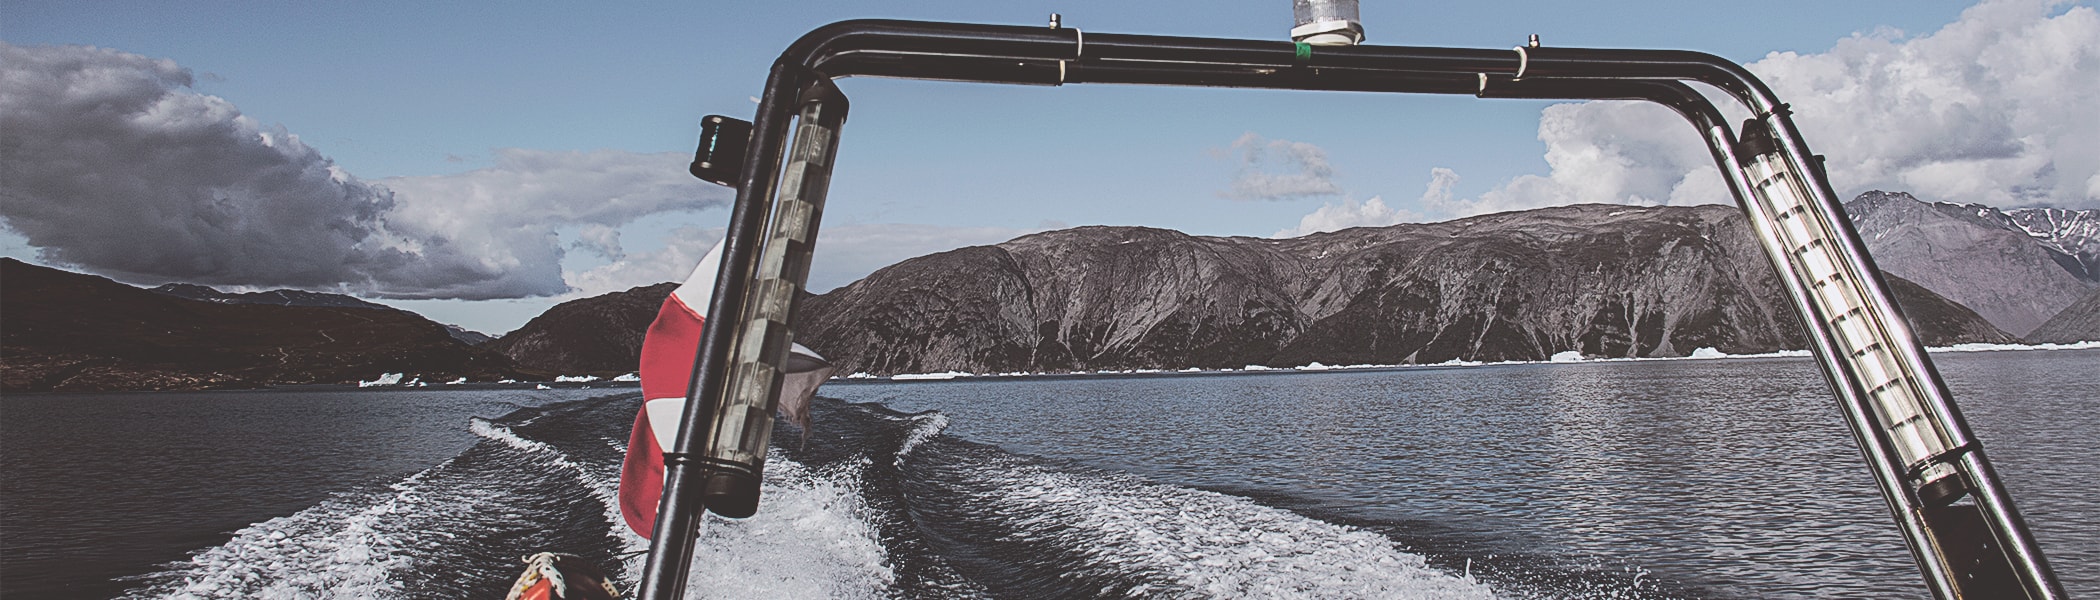 Speedbåd ligger ved vandet med udsigt over vand og bjerge. 